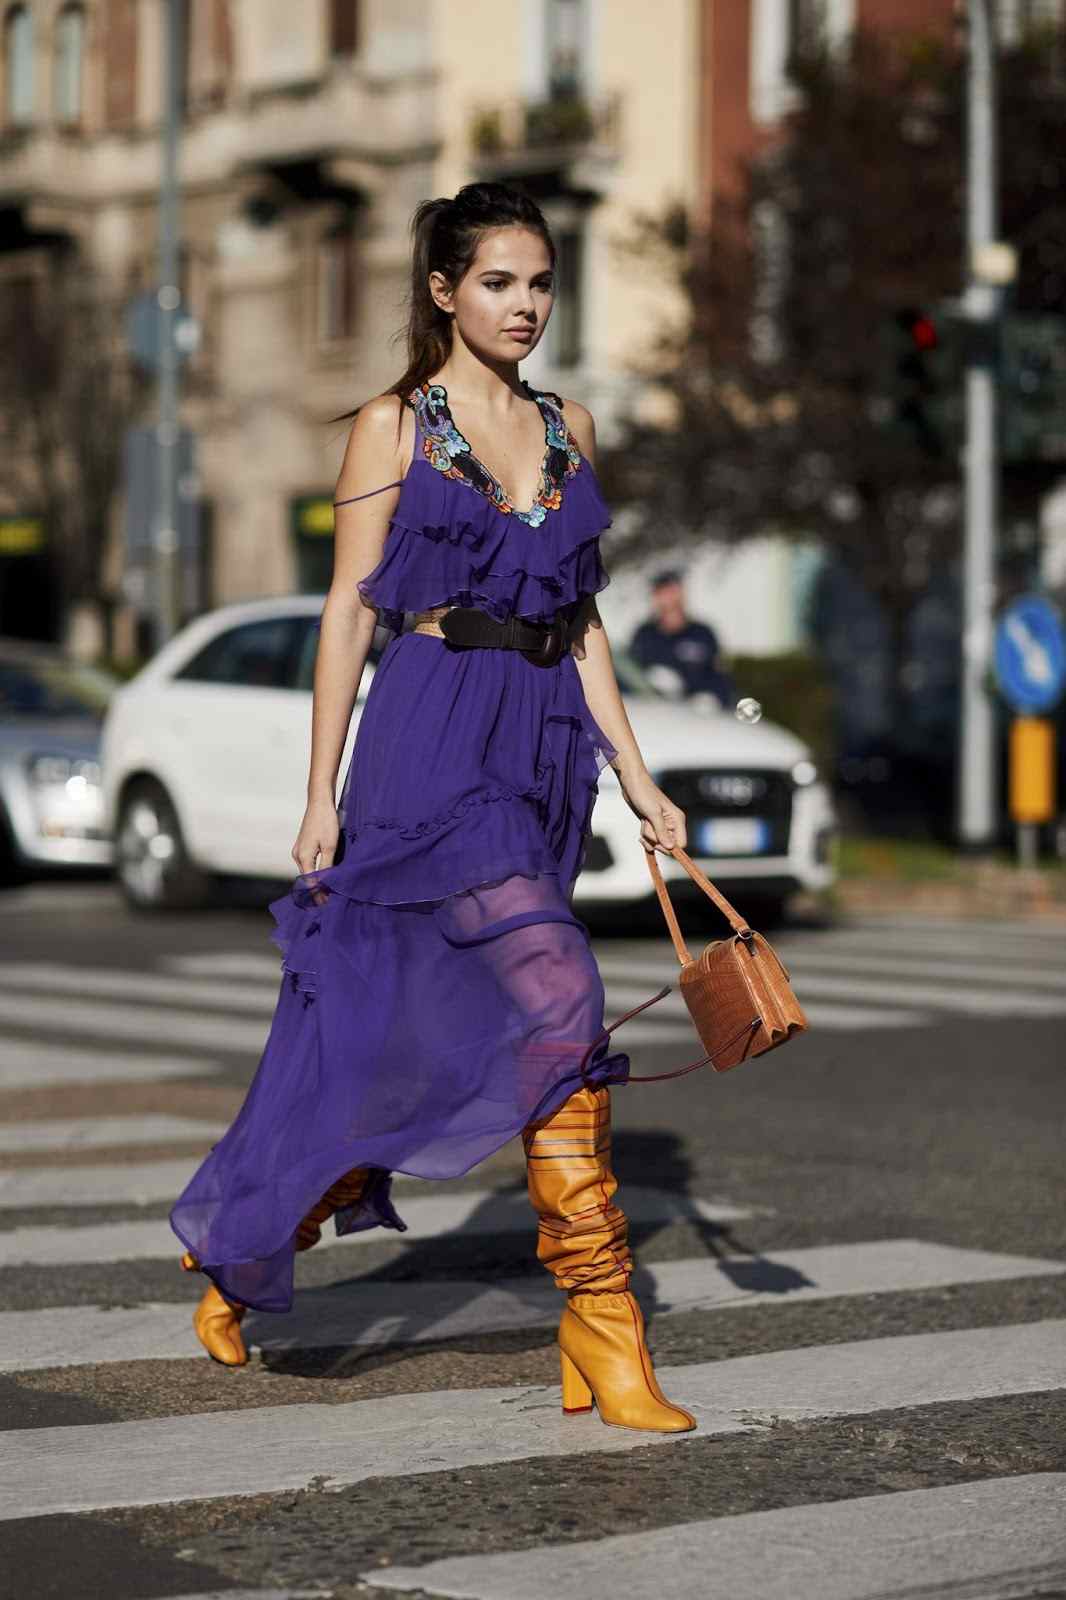 Klänning med läderstövlar kombinerar modetrender hösten 2019